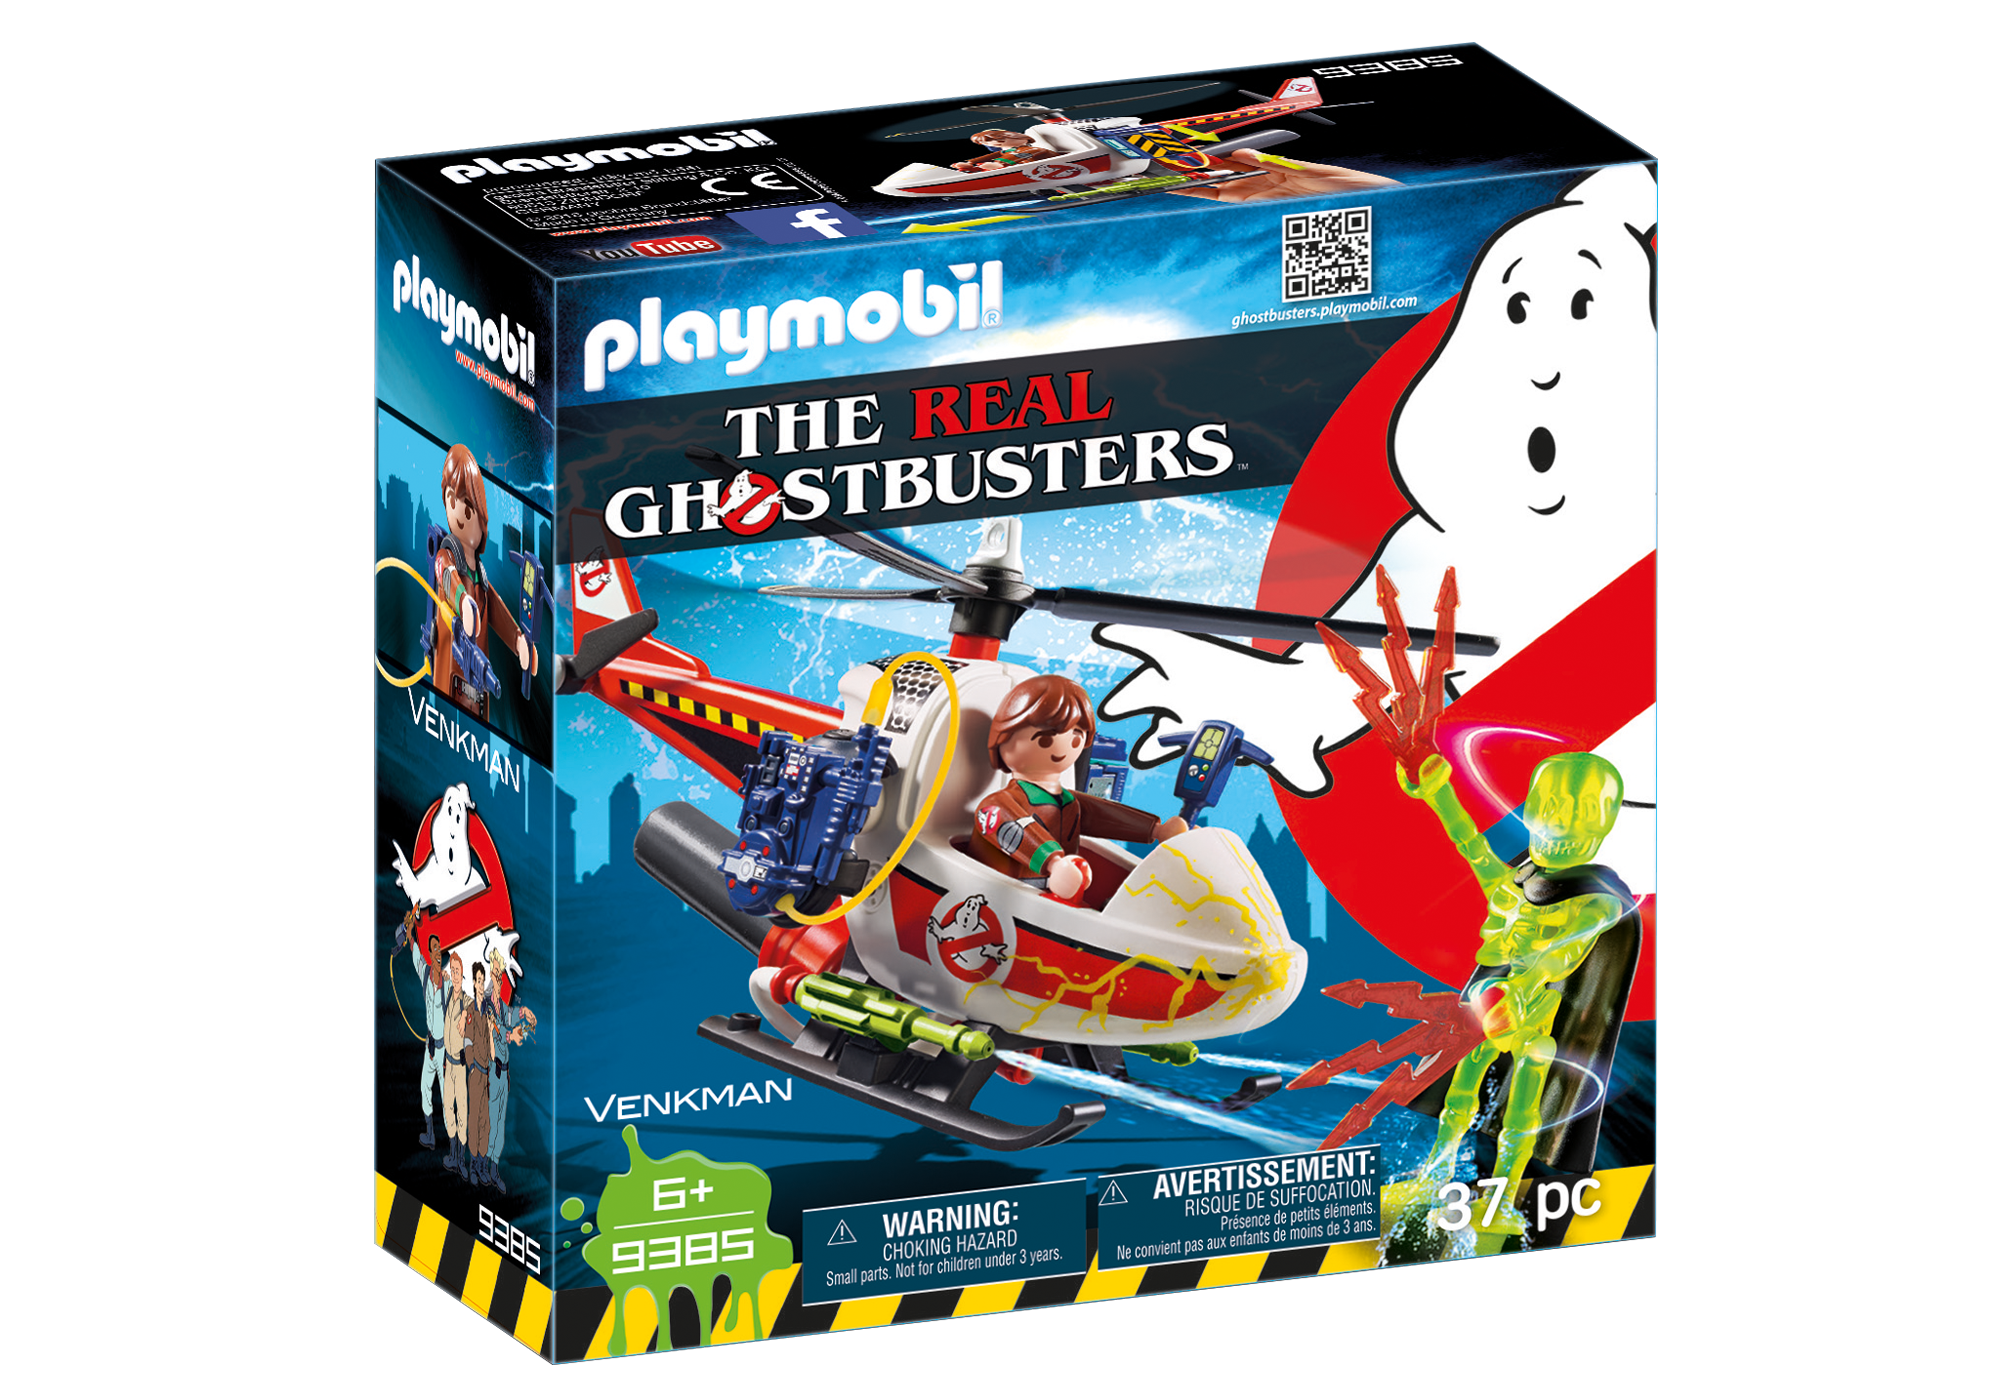 Playmobil Ghostbusters - Page 2 9385_product_box_front?locale=de-DE,de,*&$pdp_product_main_xl$